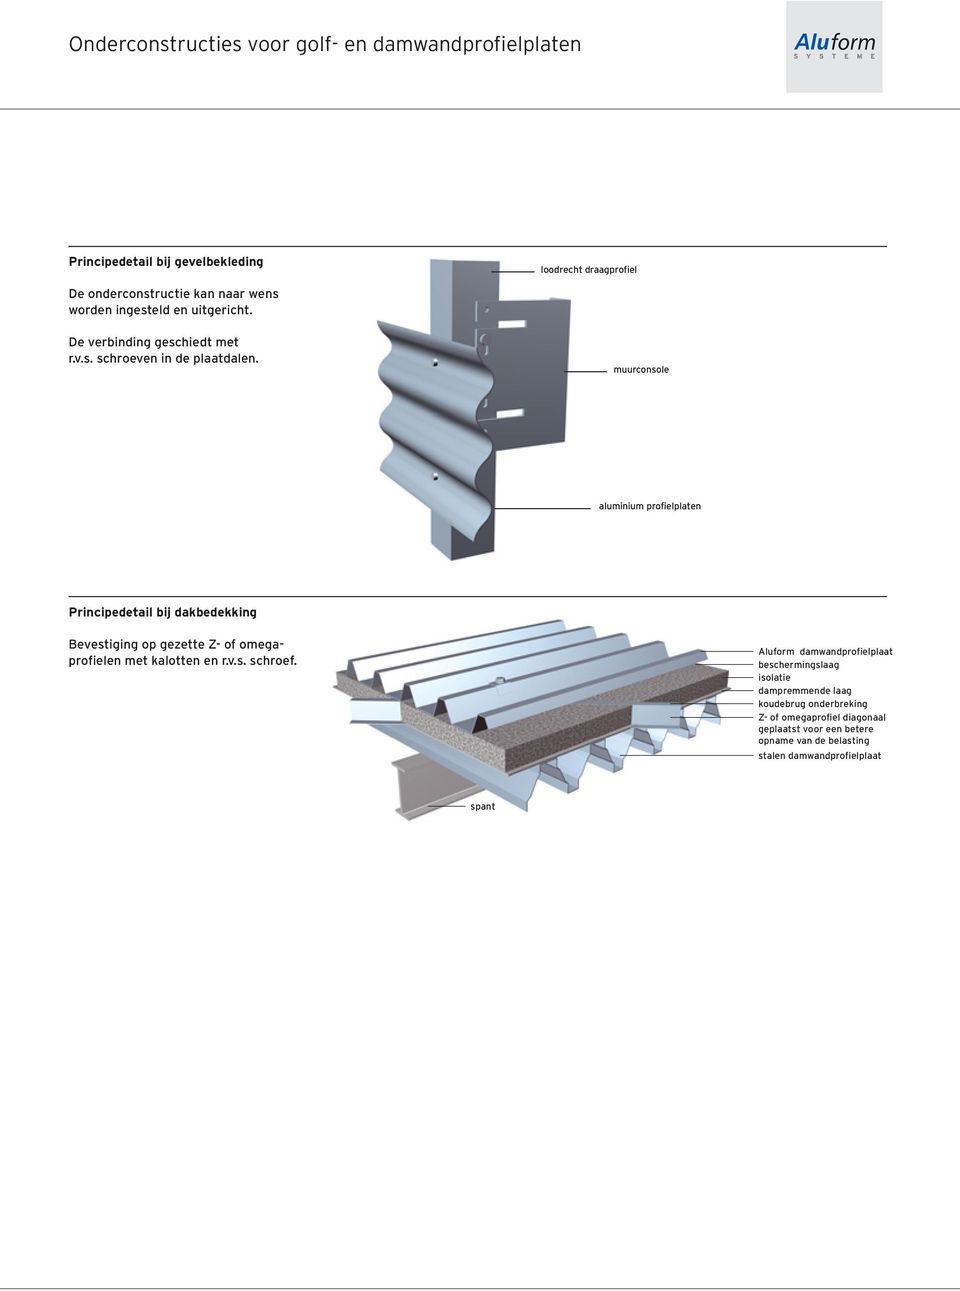 muurconsole aluminium profielplaten Principedetail bij dakbedekking Bevestiging op gezette Z- of omegaprofielen met kalotten en r.v.s. schroef.